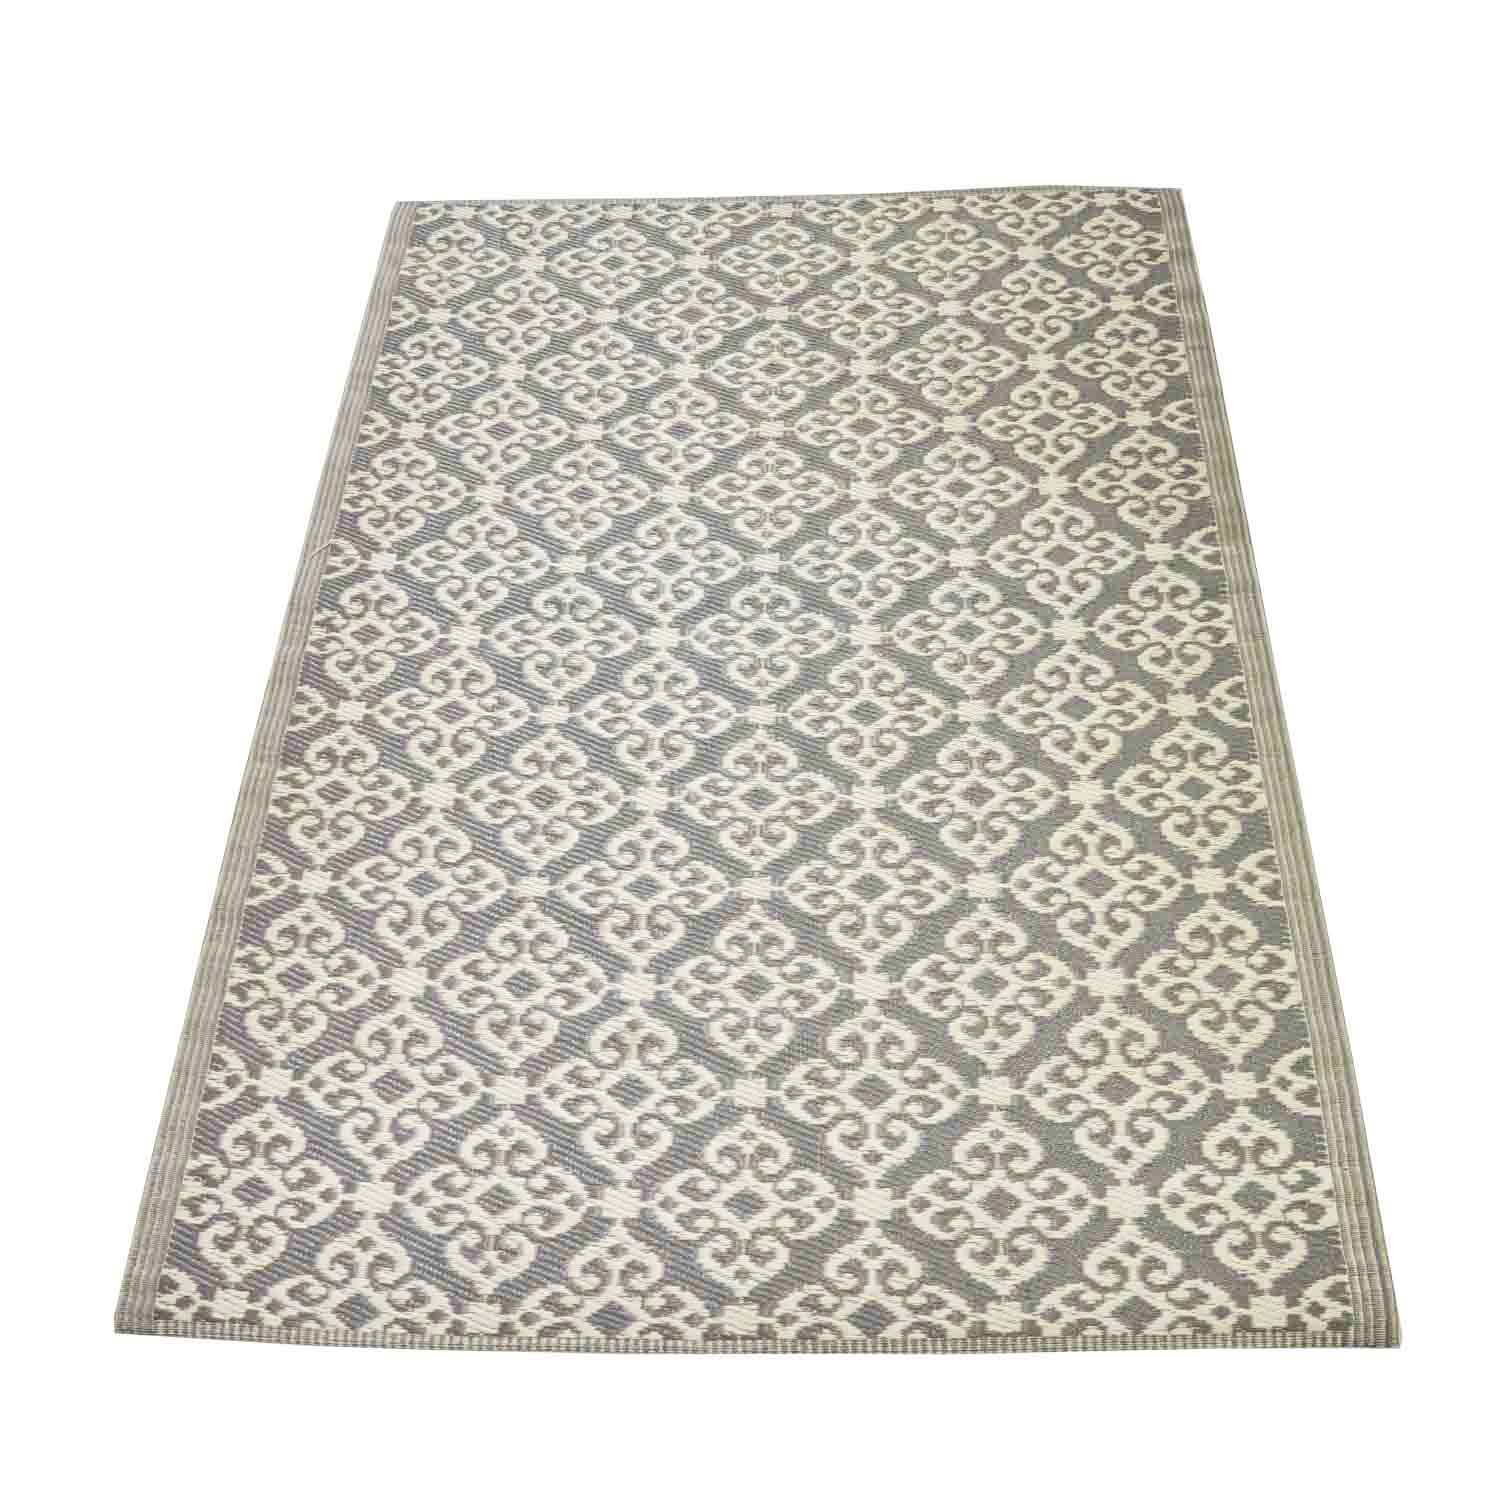 Teppich für den Außenbereich Lockenmuster grau kaufen